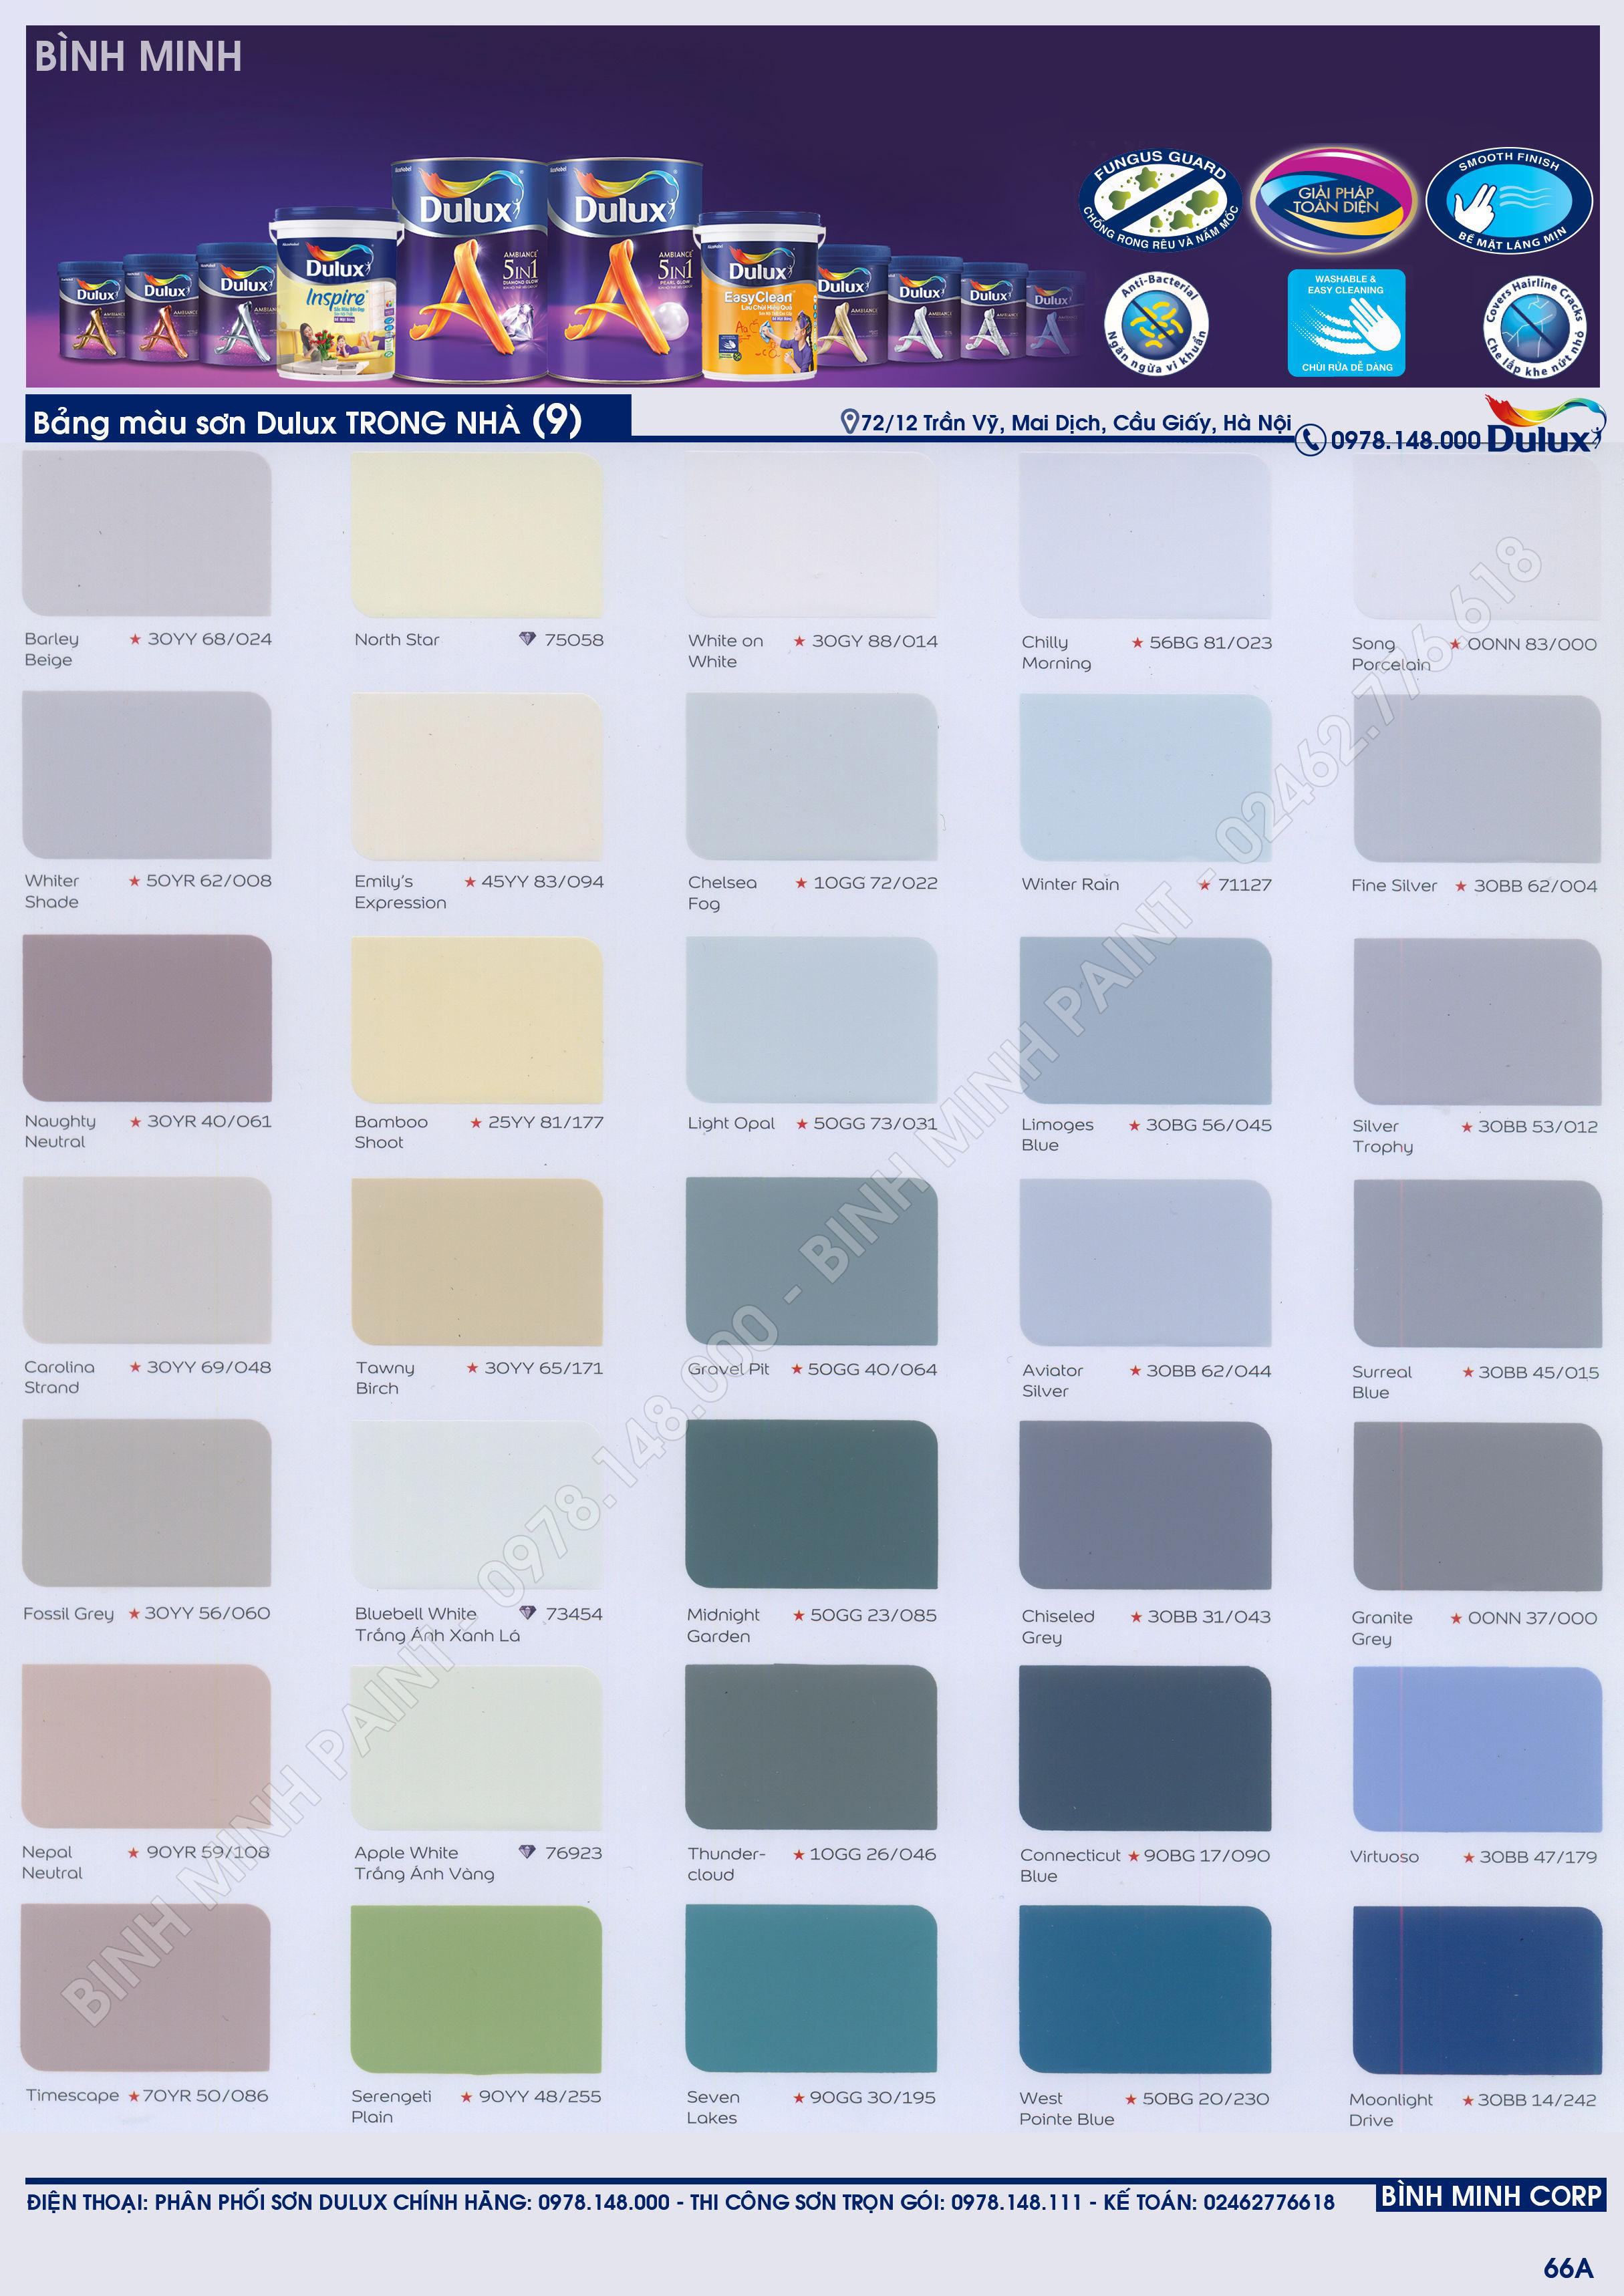 Bảng mã màu sơn nội thất: Bạn đang muốn sơn lại căn phòng của mình nhưng chưa biết chọn màu nào phù hợp? Hãy tham khảo bảng mã màu sơn nội thất để tìm ra màu sắc phù hợp nhất với phong cách của bạn. Xem hình ảnh để cập nhật những bảng màu mới nhất.